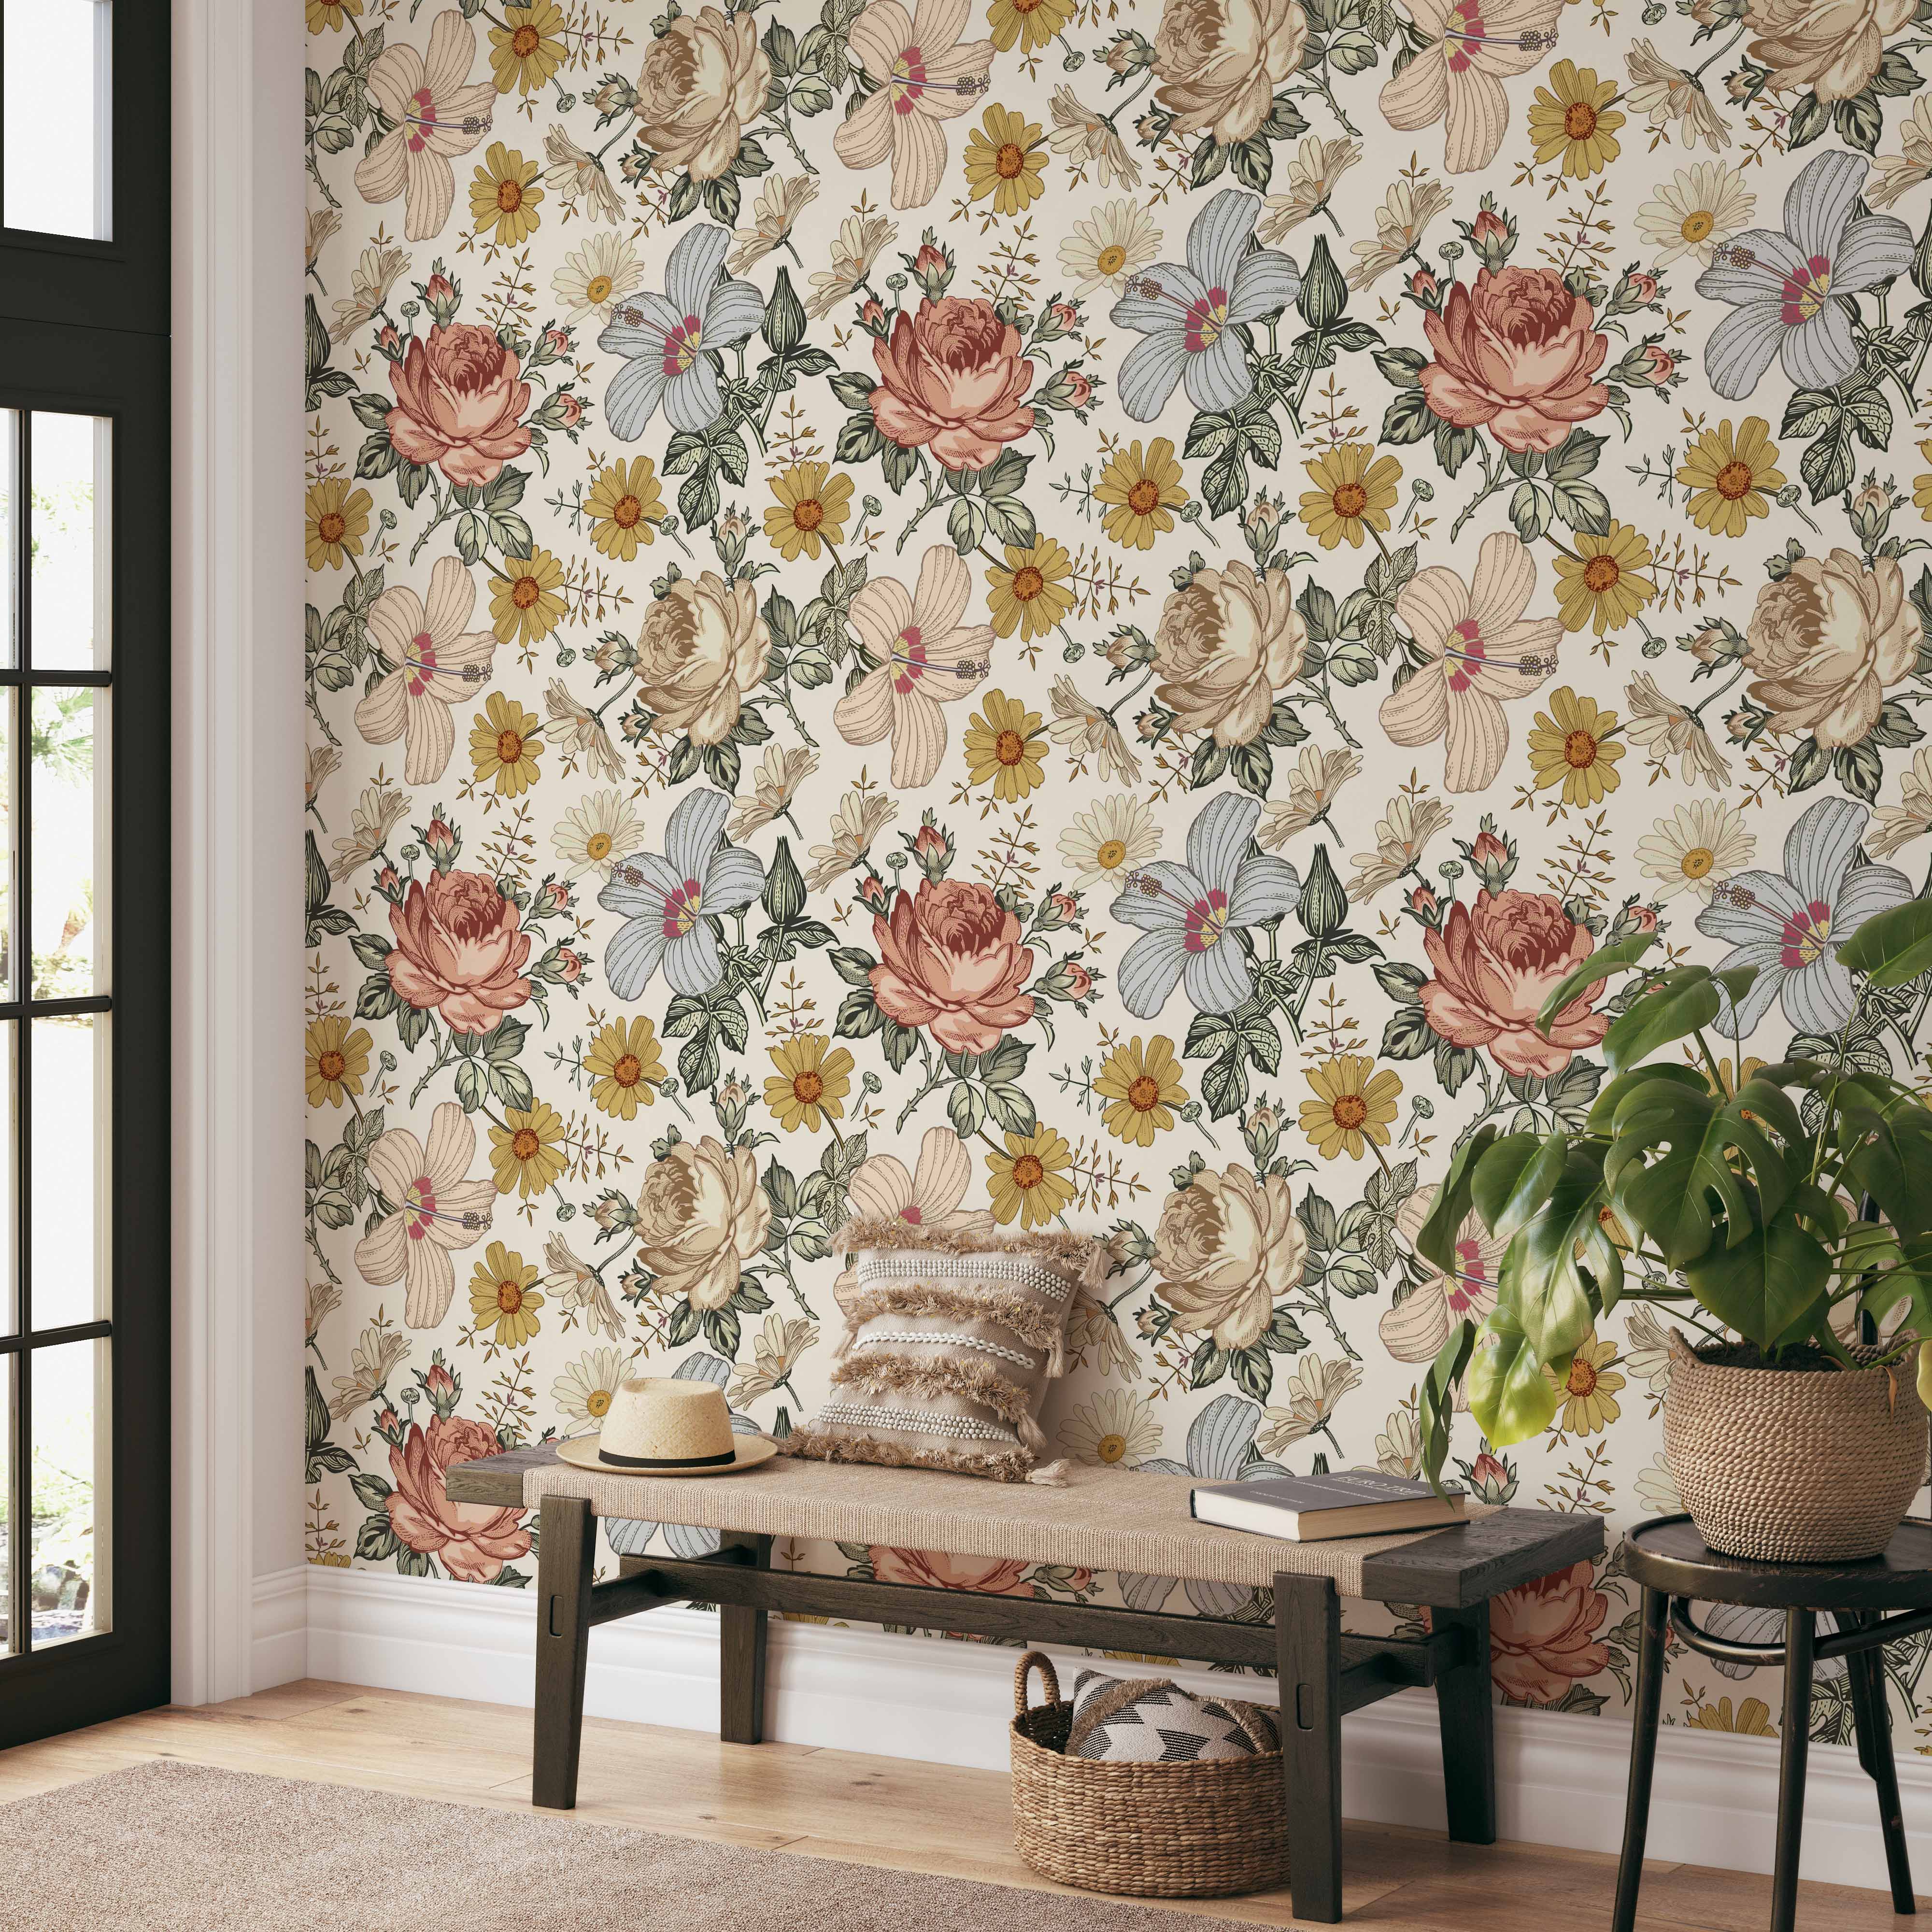 Floral Wallpaper & Flower Wall Murals | Wallsauce UK